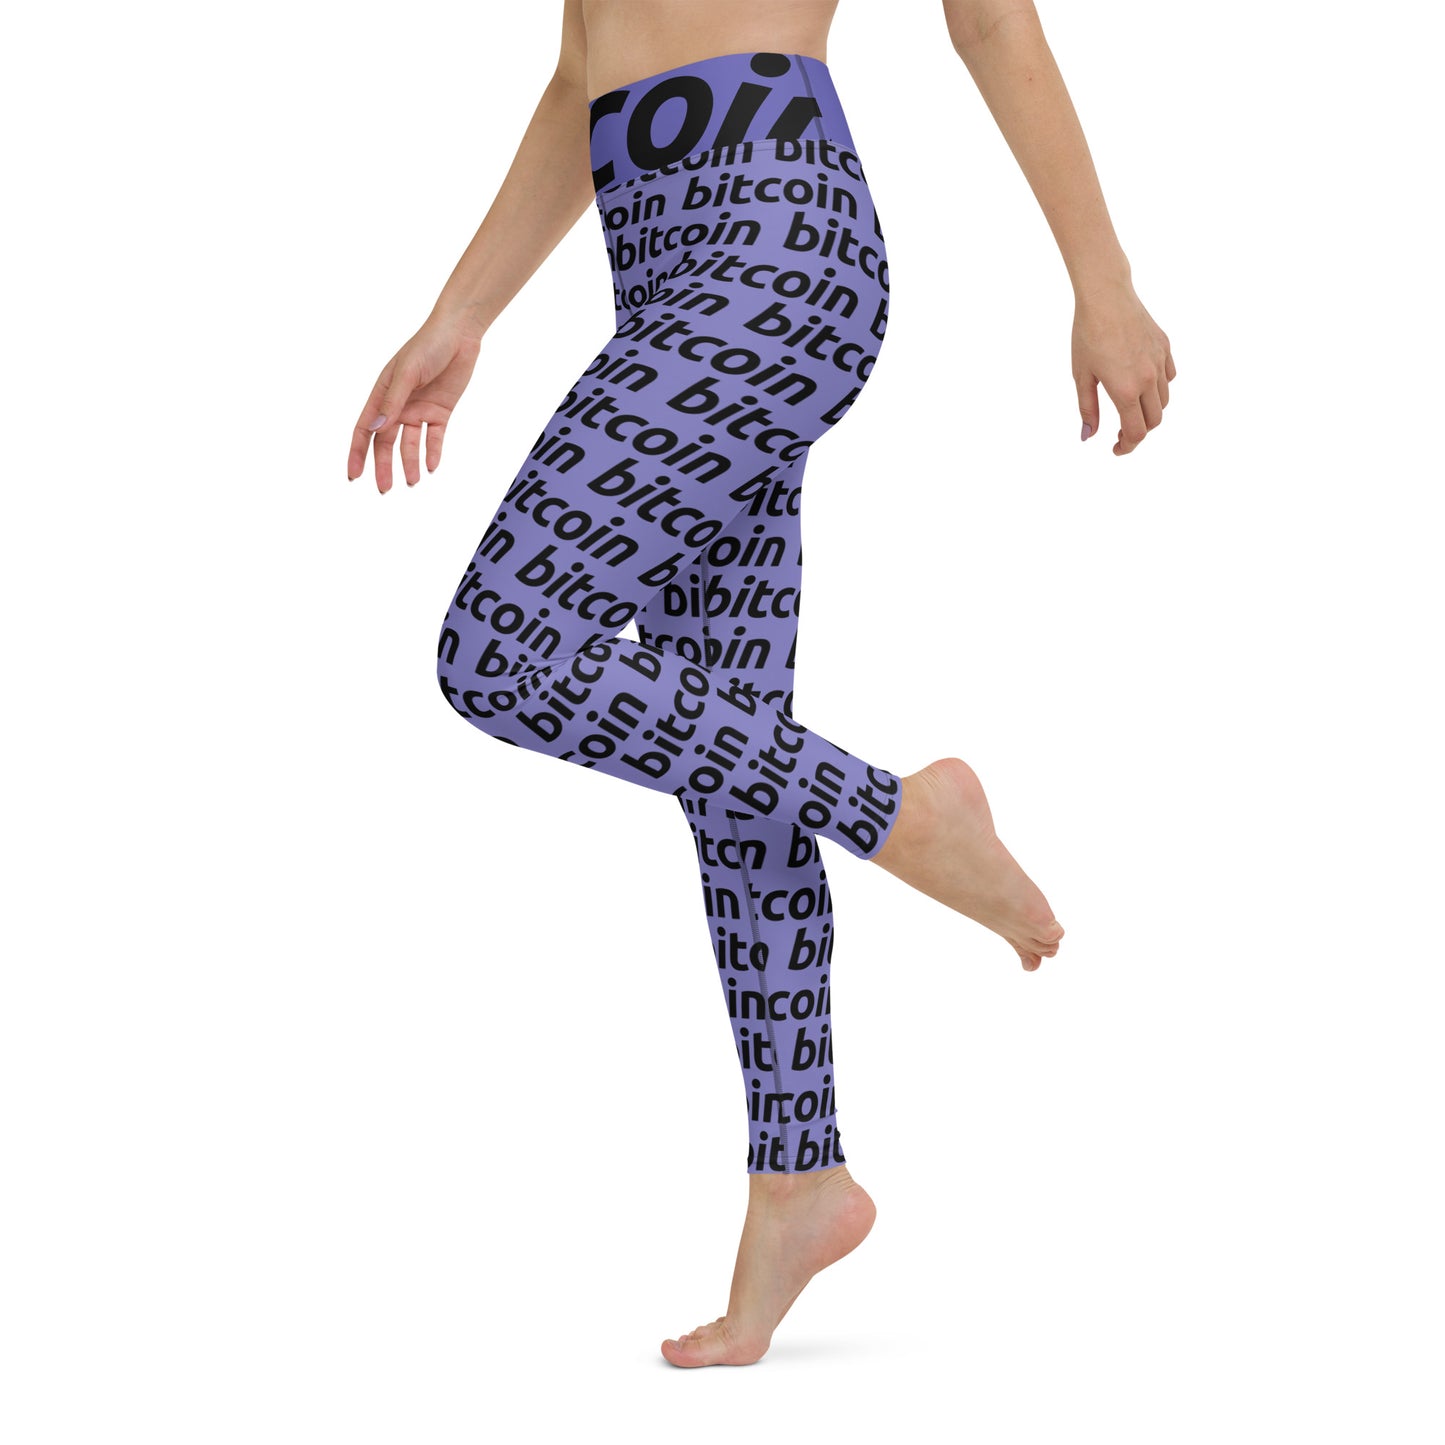 Bitcoin Violetta Yoga Leggings